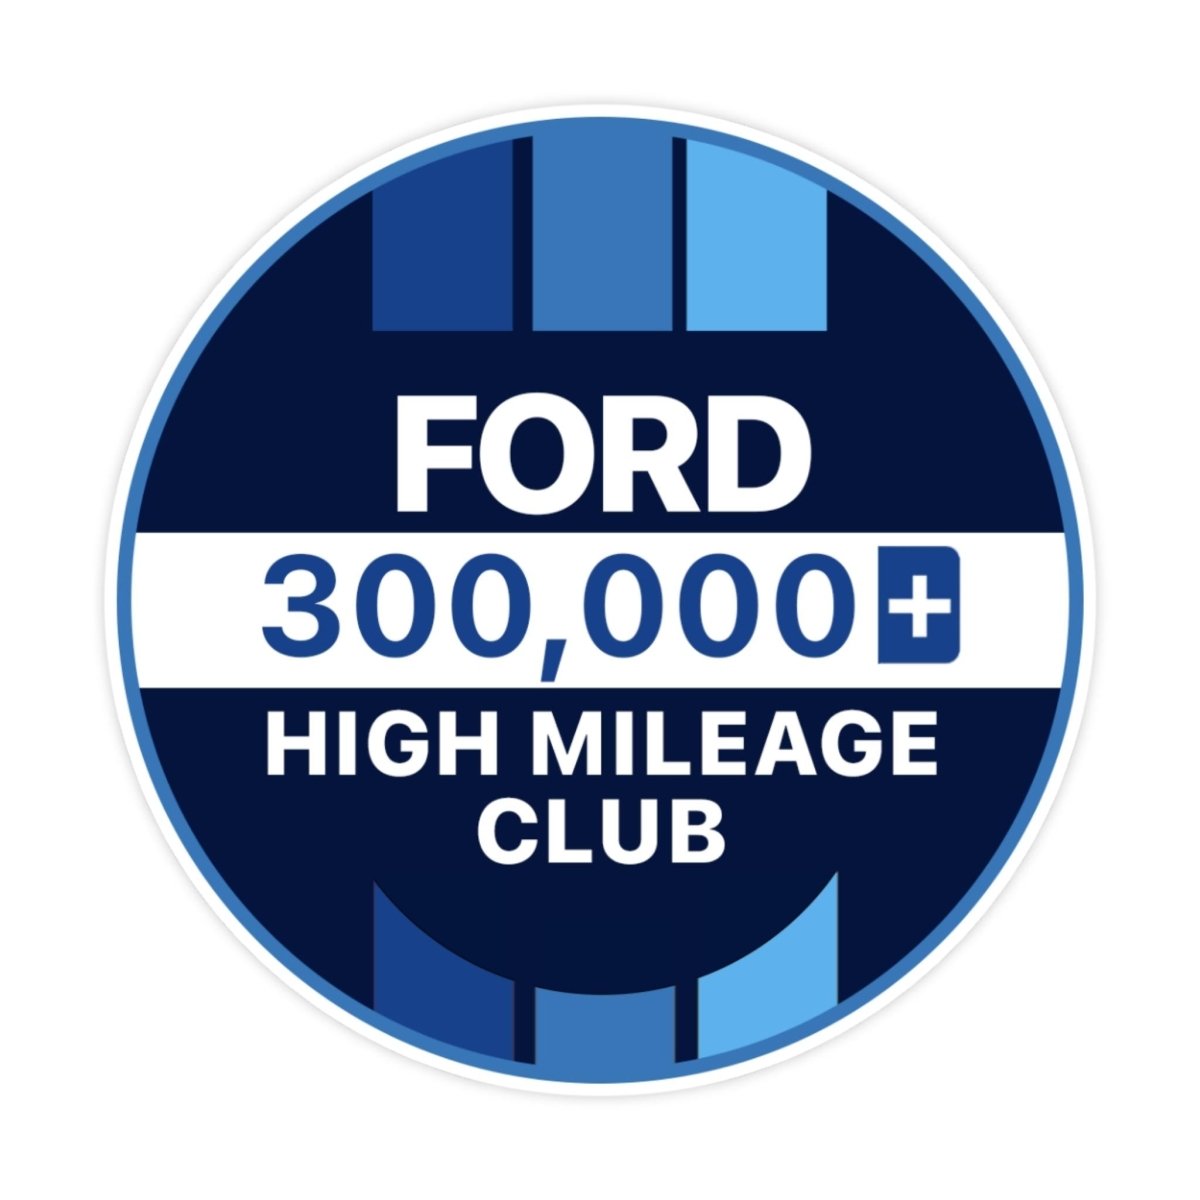 Ford 100k High Mileage Club Sticker - stickerbullFord 100k High Mileage Club StickerRetail StickerstickerbullstickerbullTaylor_Ford300k [#120]300kFord 100k High Mileage Club Sticker